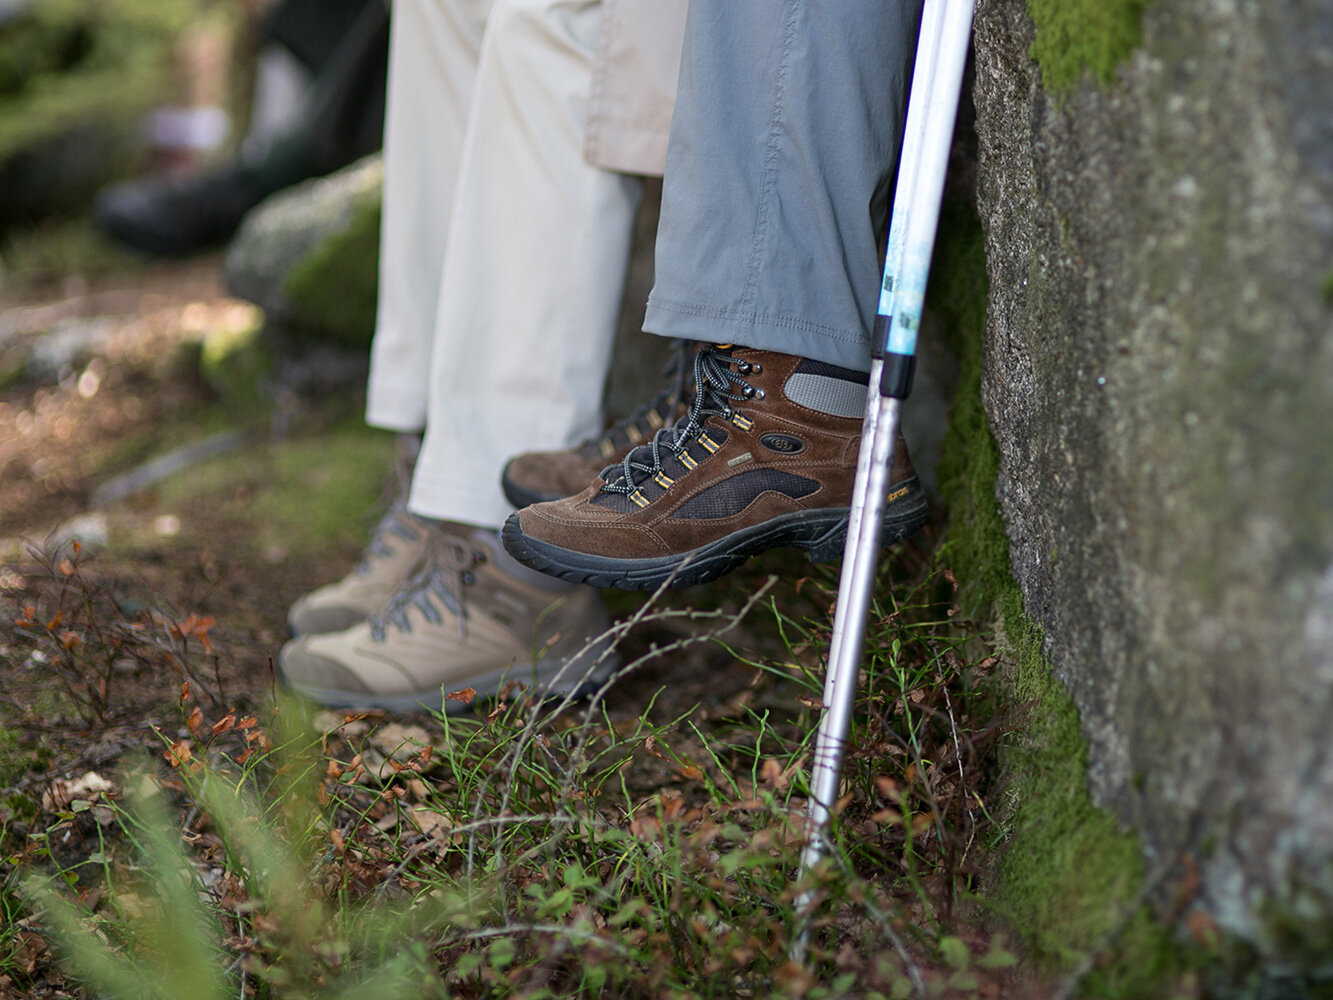 Bild: Beine zweier Menschen, die von einem Baumstamm baumeln